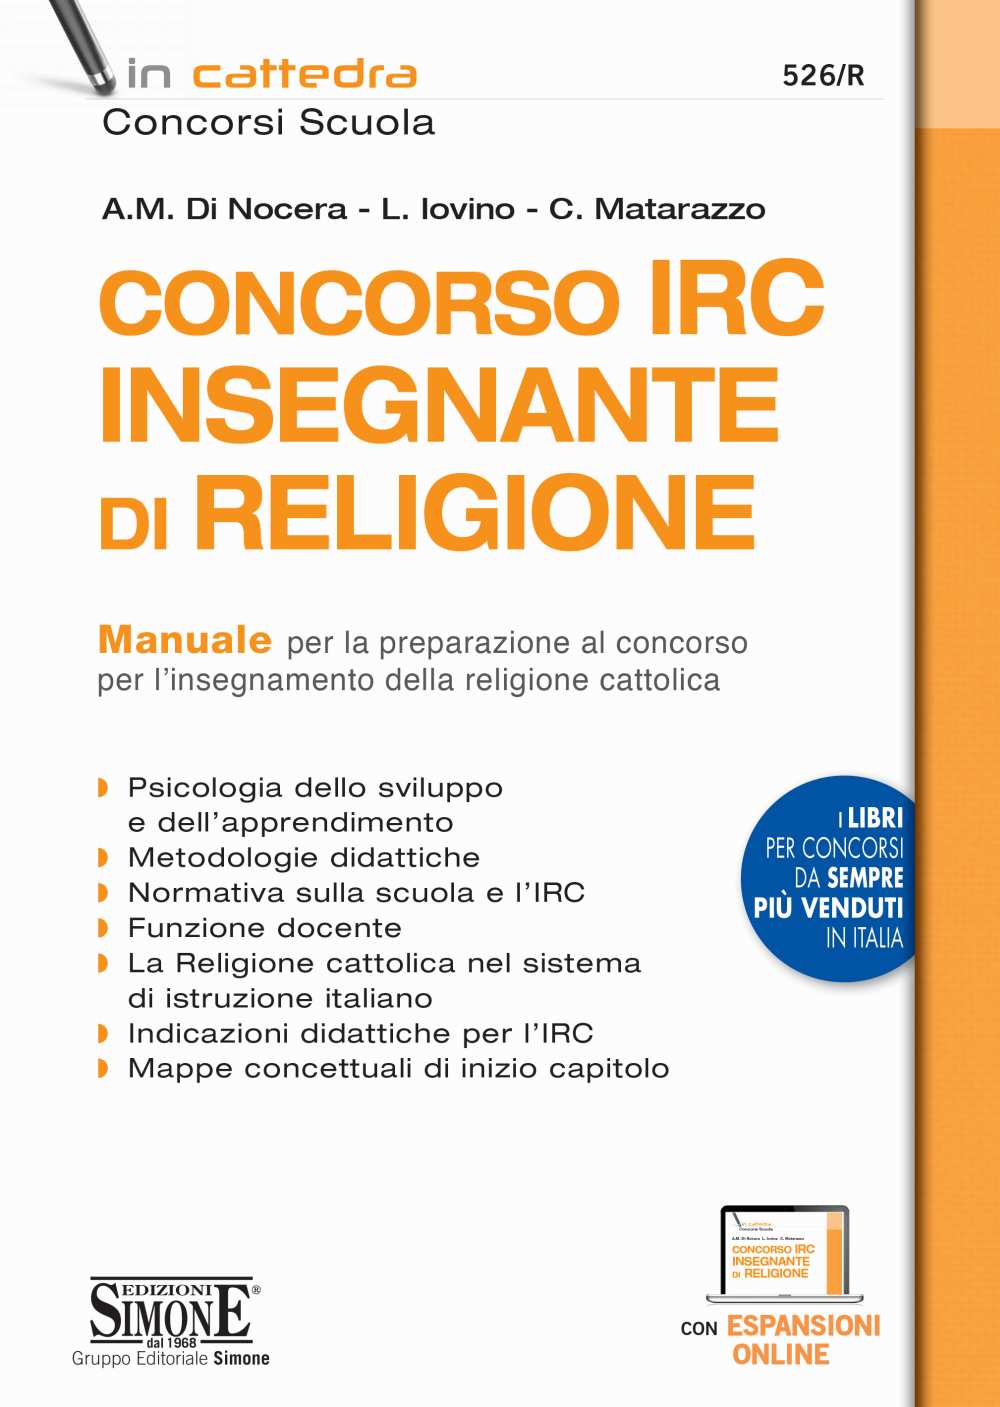 Concorso IRC Insegnante di Religione - Manuale per la preparazione - 526/R